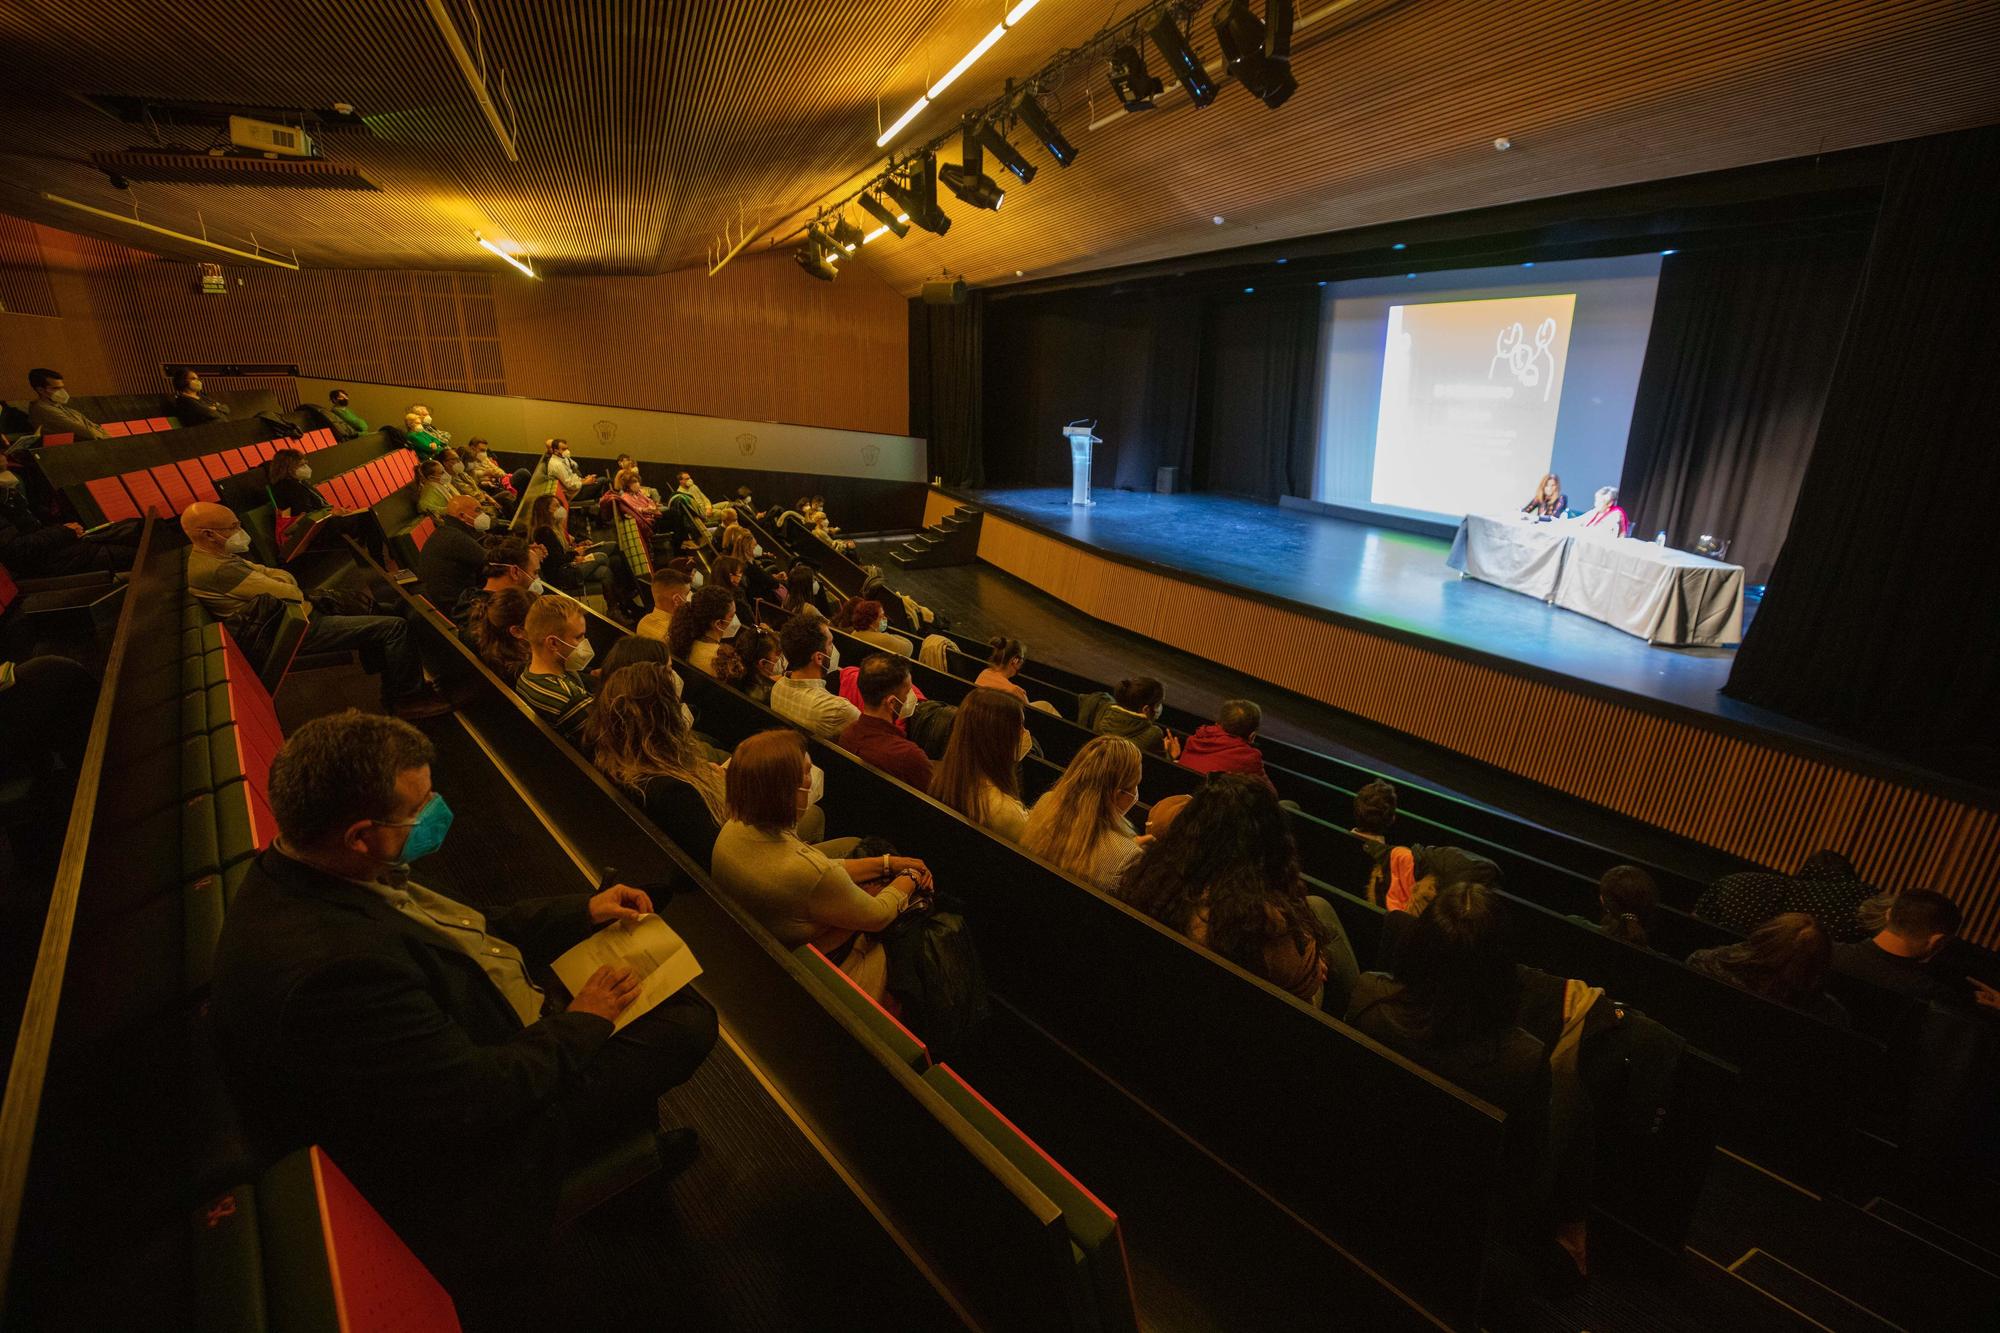 Congreso Amadiba en Ibiza